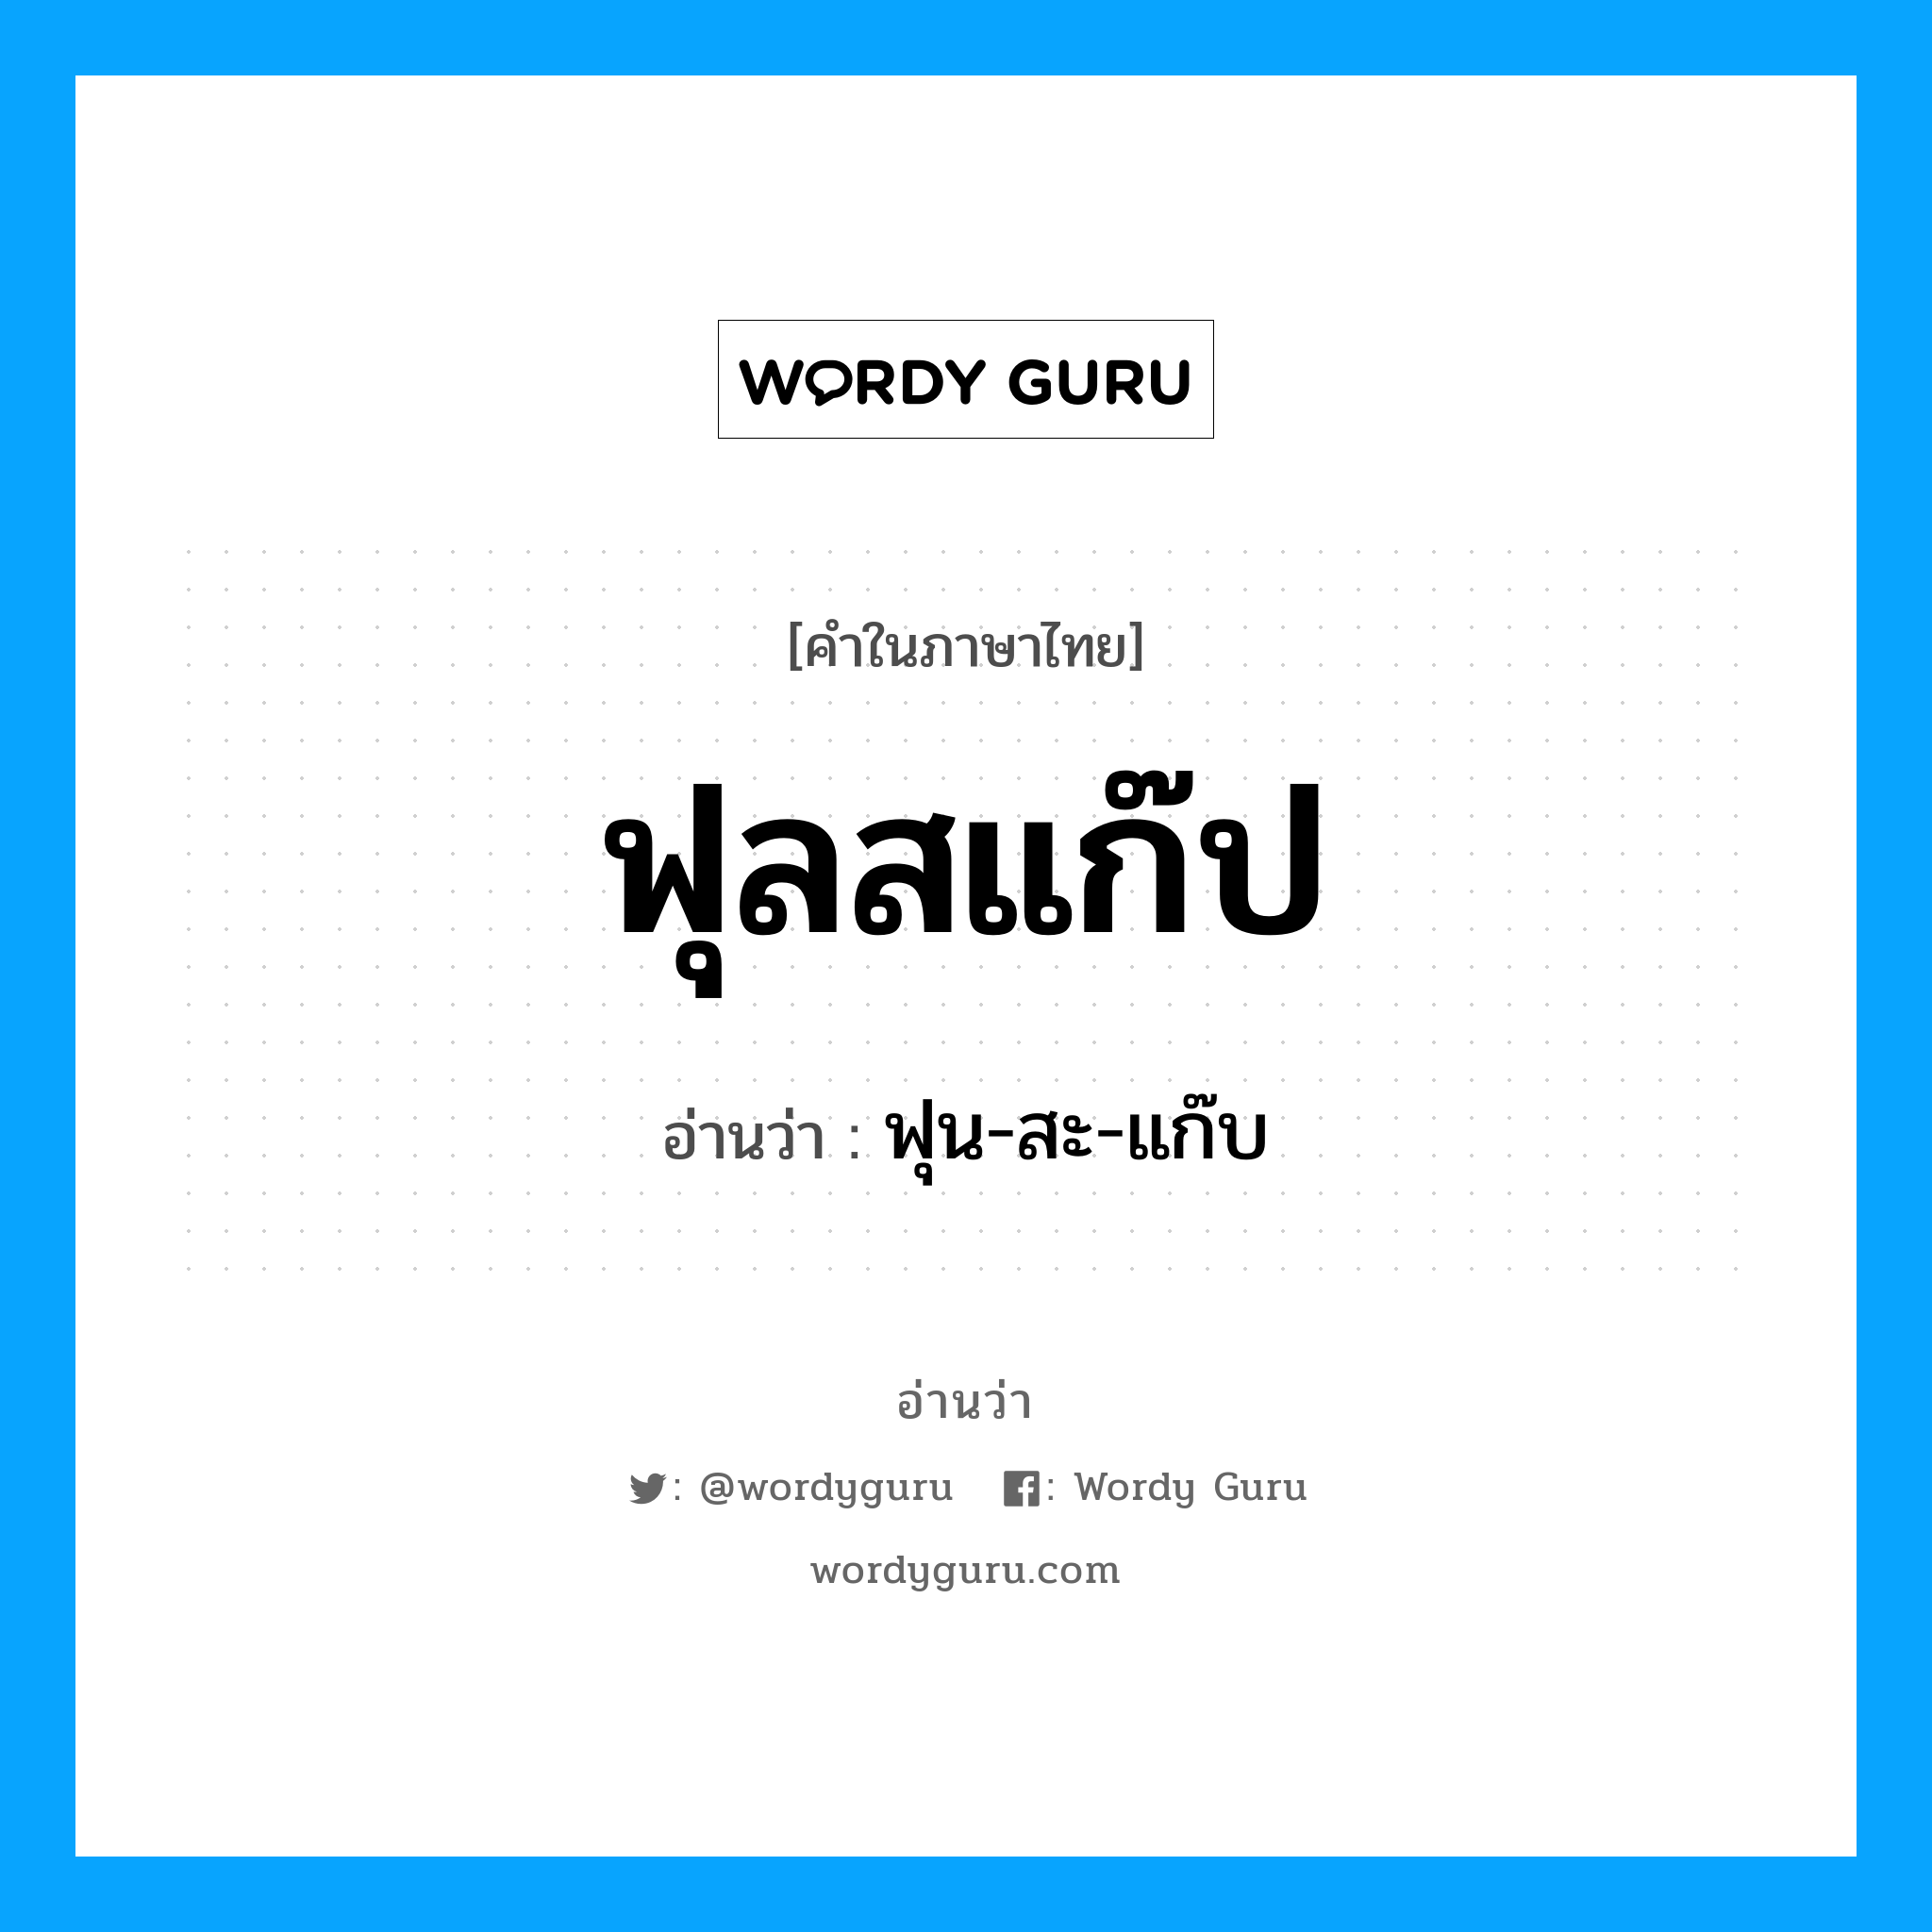 ฟุน-สะ-แก๊บ เป็นคำอ่านของคำไหน?, คำในภาษาไทย ฟุน-สะ-แก๊บ อ่านว่า ฟุลสแก๊ป